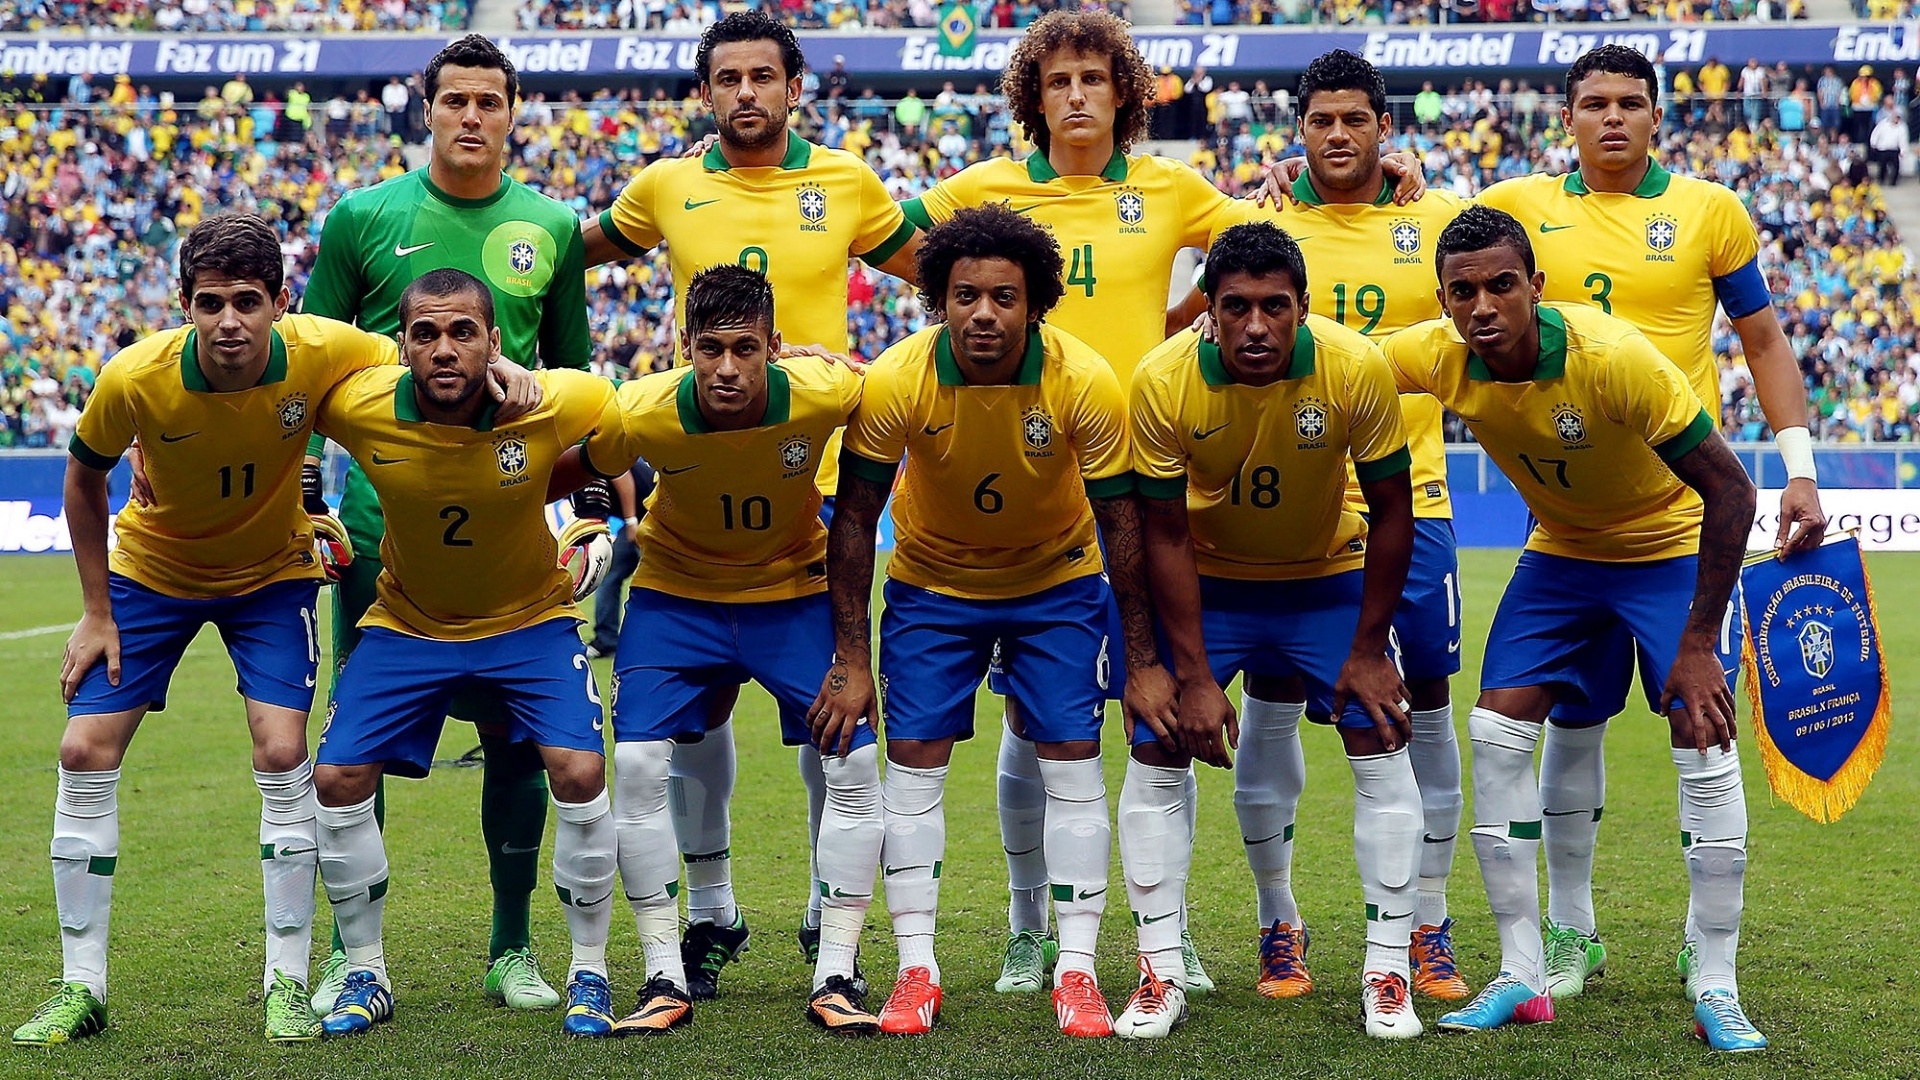 09.jun.2013 - Seleção brasileira posa para foto oficial antes de amistoso contra a França em Porto Alegre